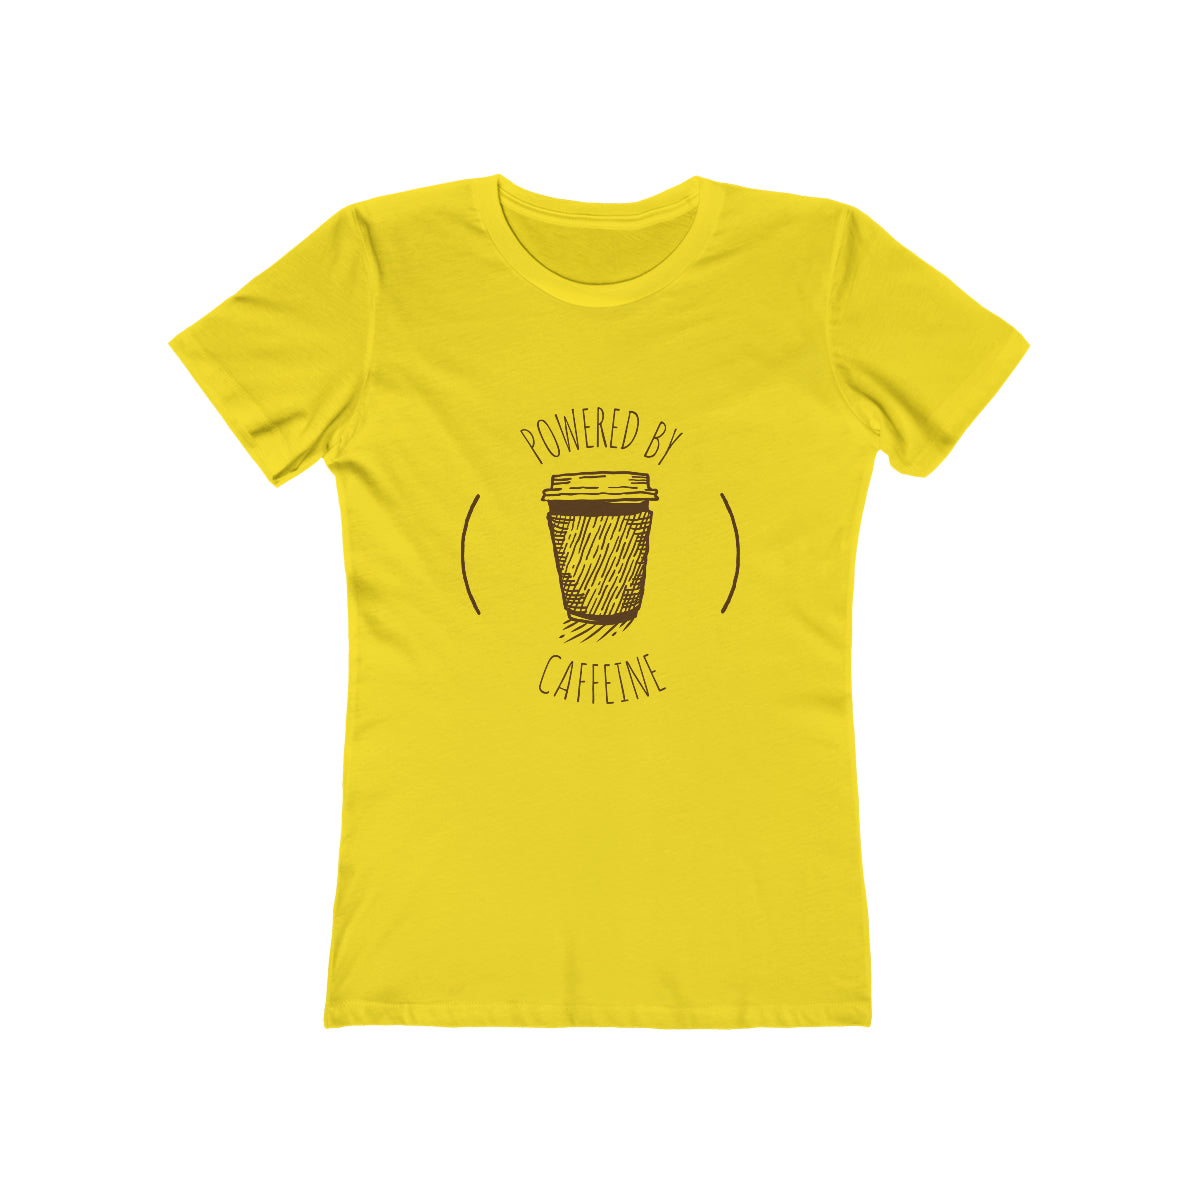 Powered By Caffeine - Women's T-shirt